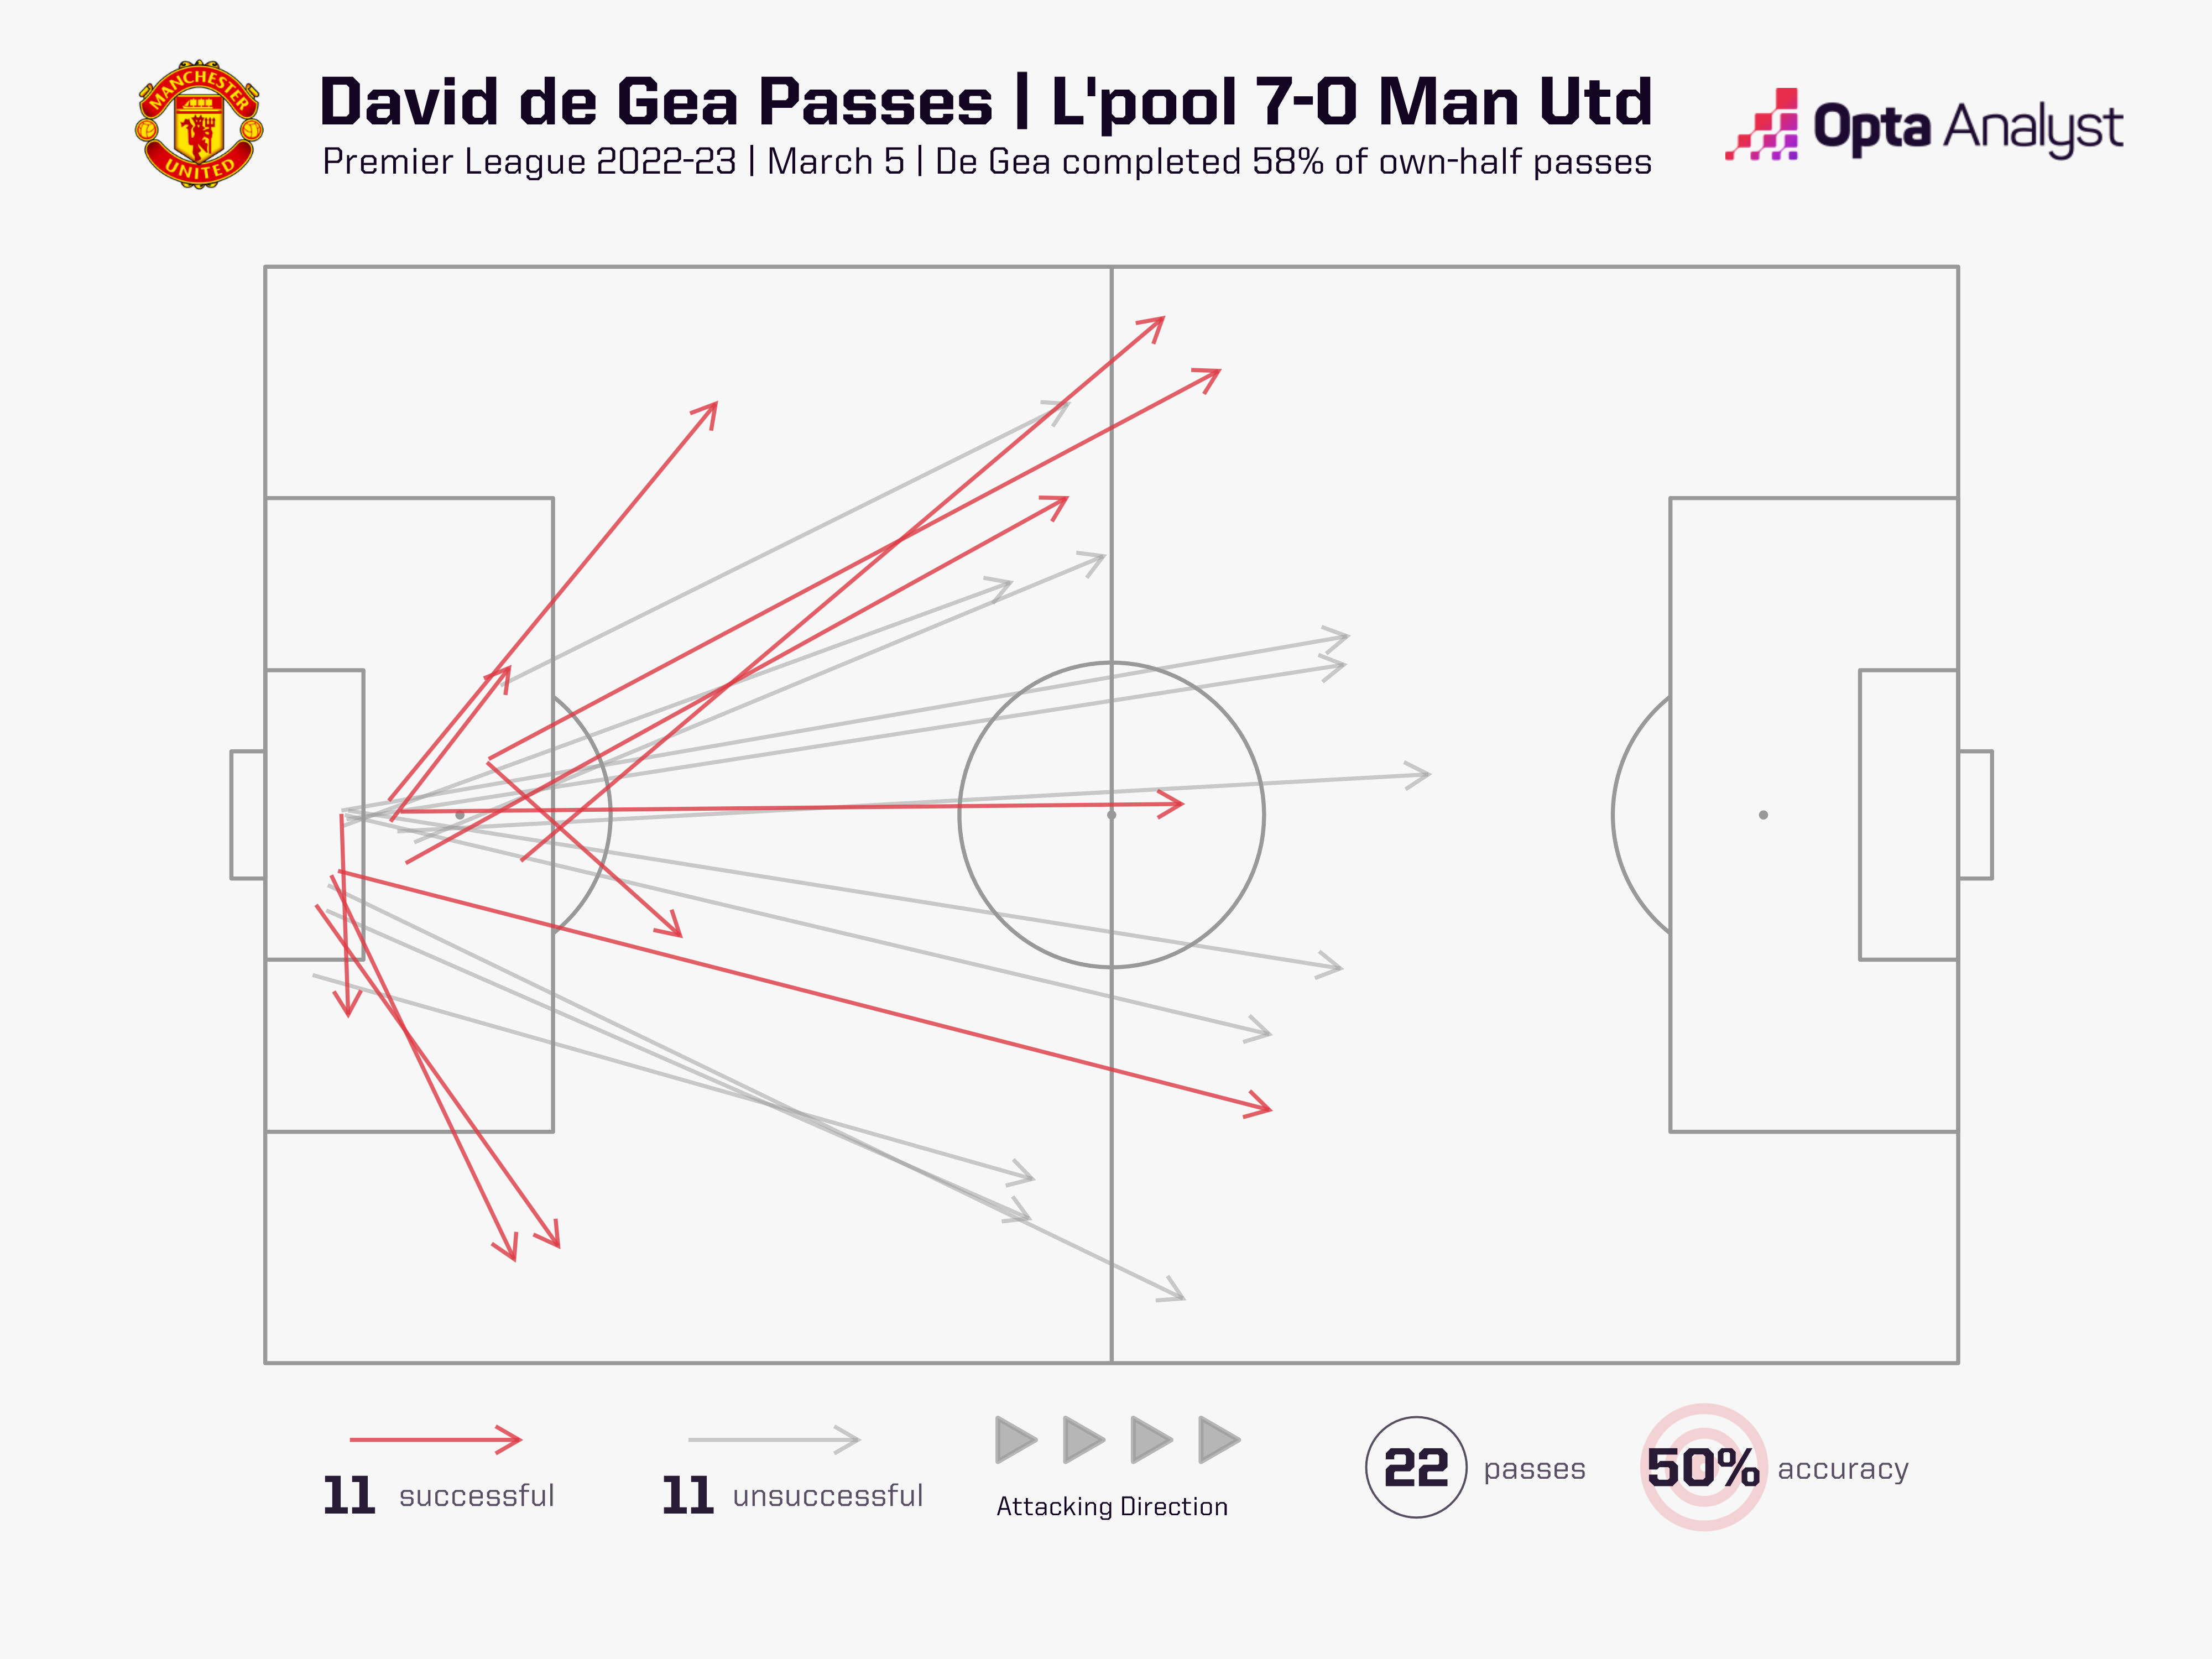 Tỉ lệ đường chuyền hỏng (xám) và thành công (đỏ) của De Gea trong trận thua Liverpool 0-7 - Theo OPTA